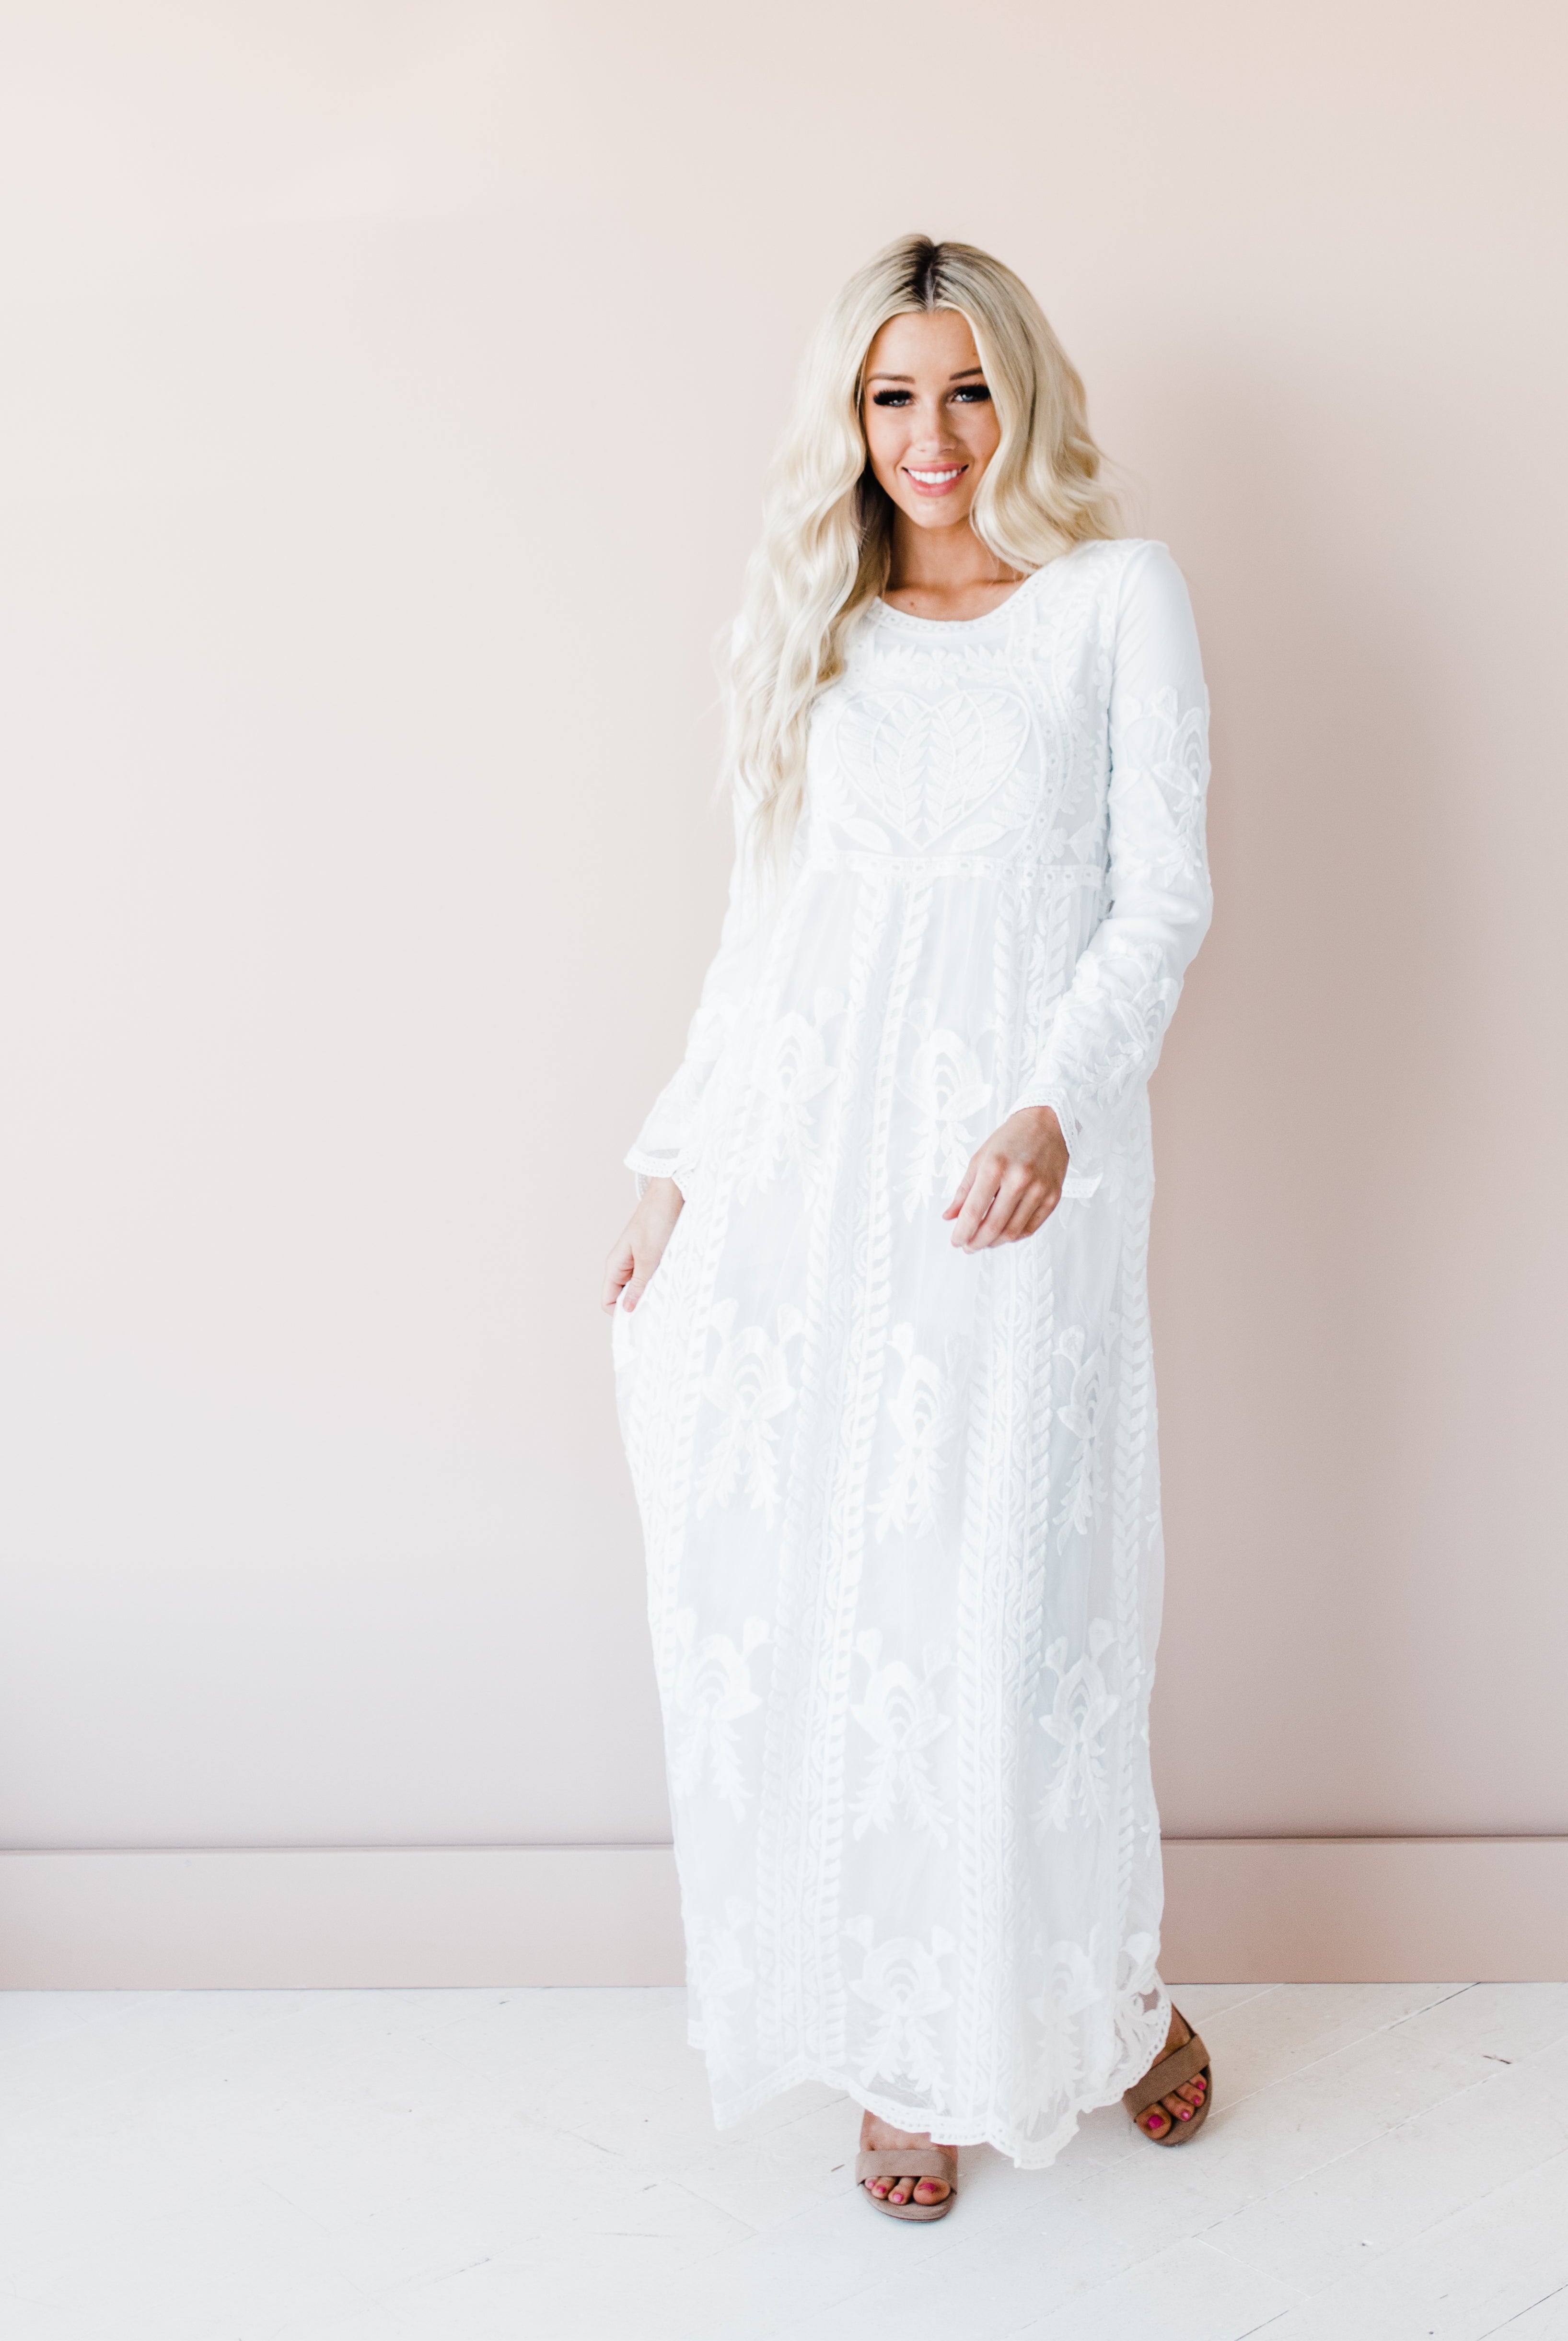 white lace temple Mormon dress